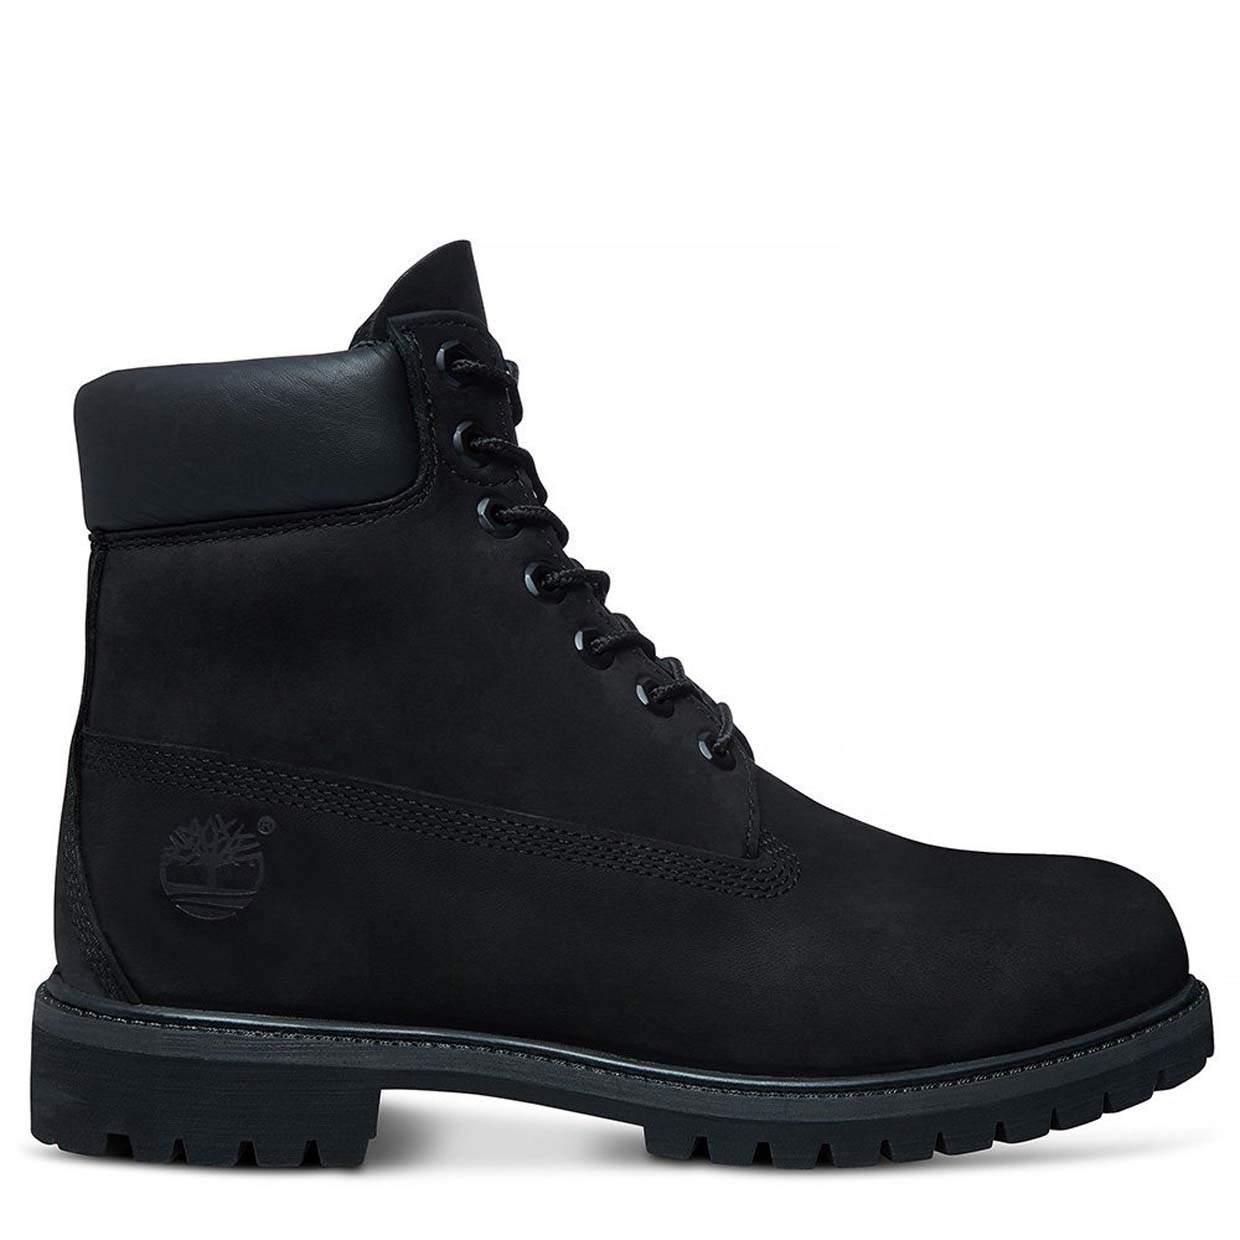 Ботинки мужские Timberland 6 Inch Premium Boot Waterproof черные 10.5 US -купить в Москве, цены на Мегамаркет